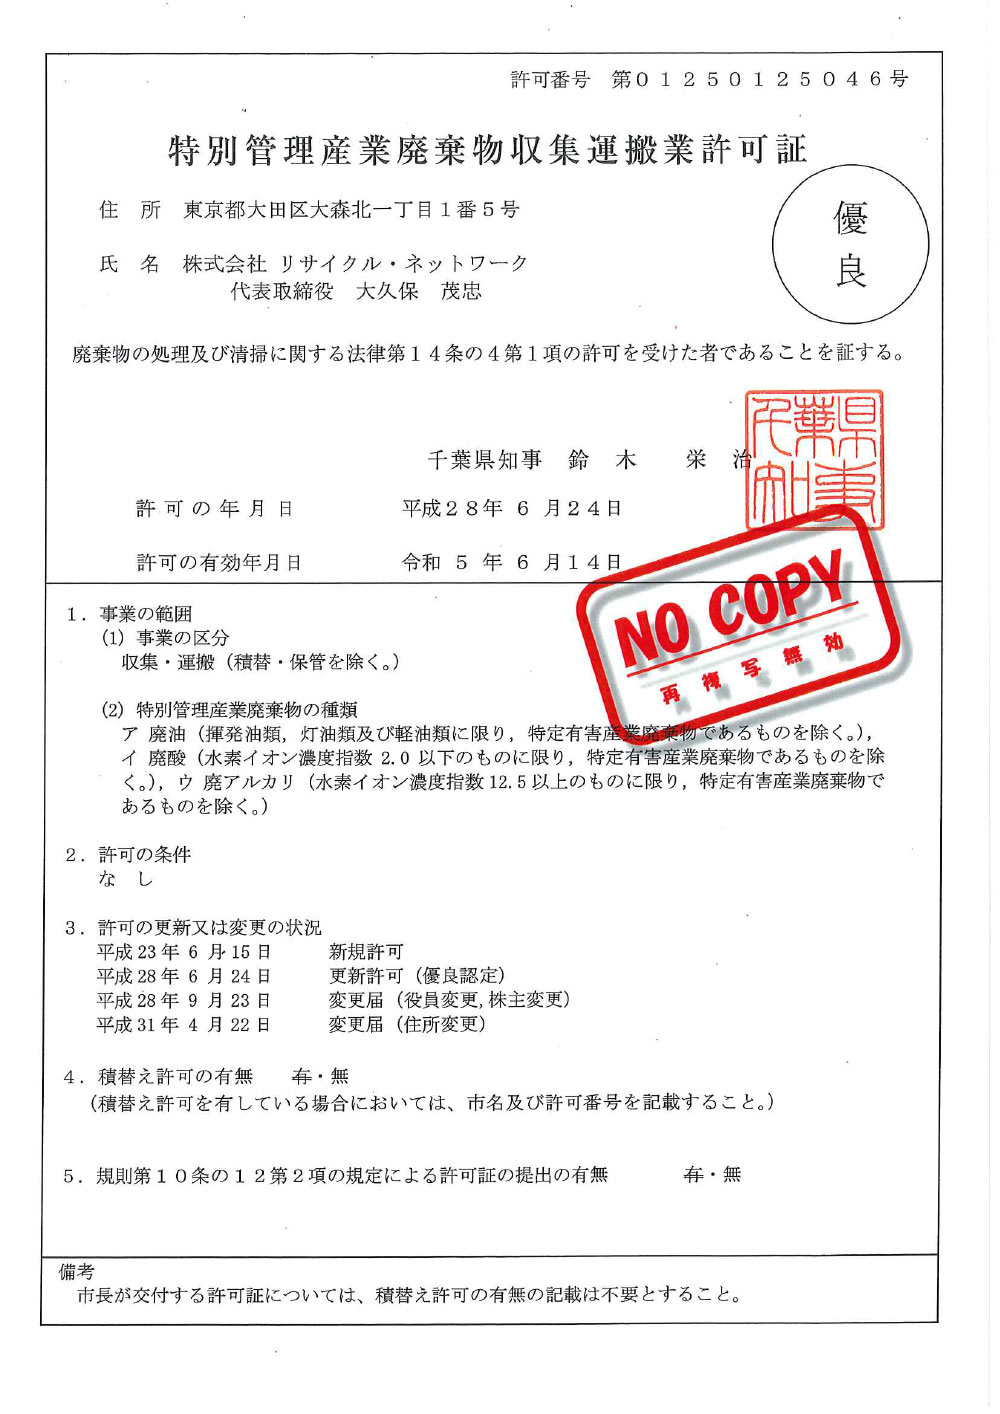 千葉県 特別管理産業廃棄物収集運搬許可証